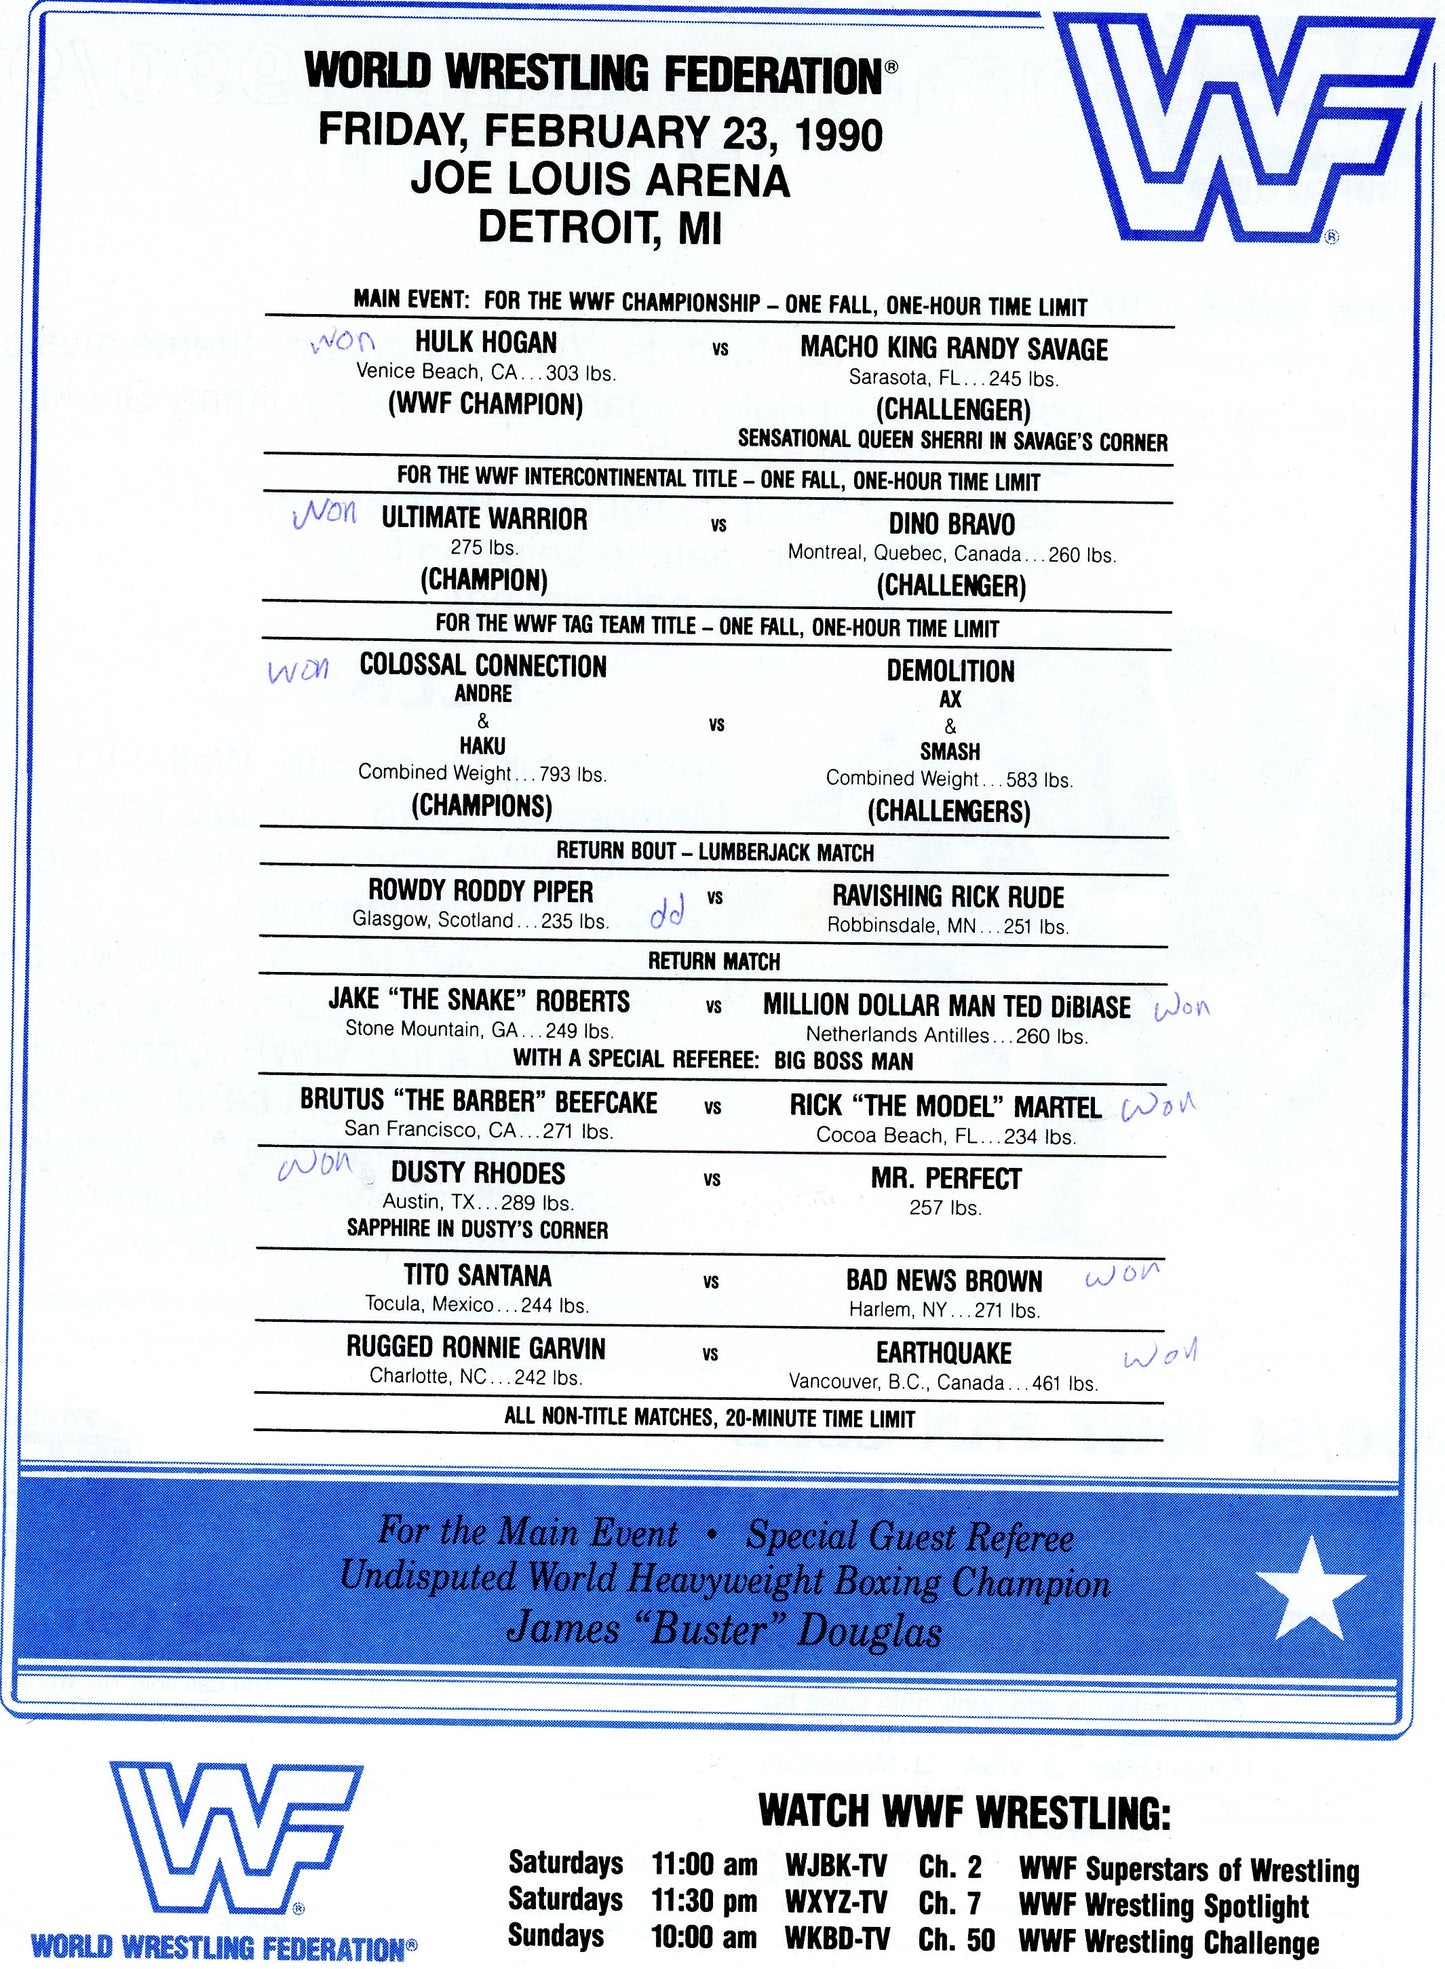 Original WWF WWE Wrestling Event House Show Program (Feb, 1990) Detroit MI